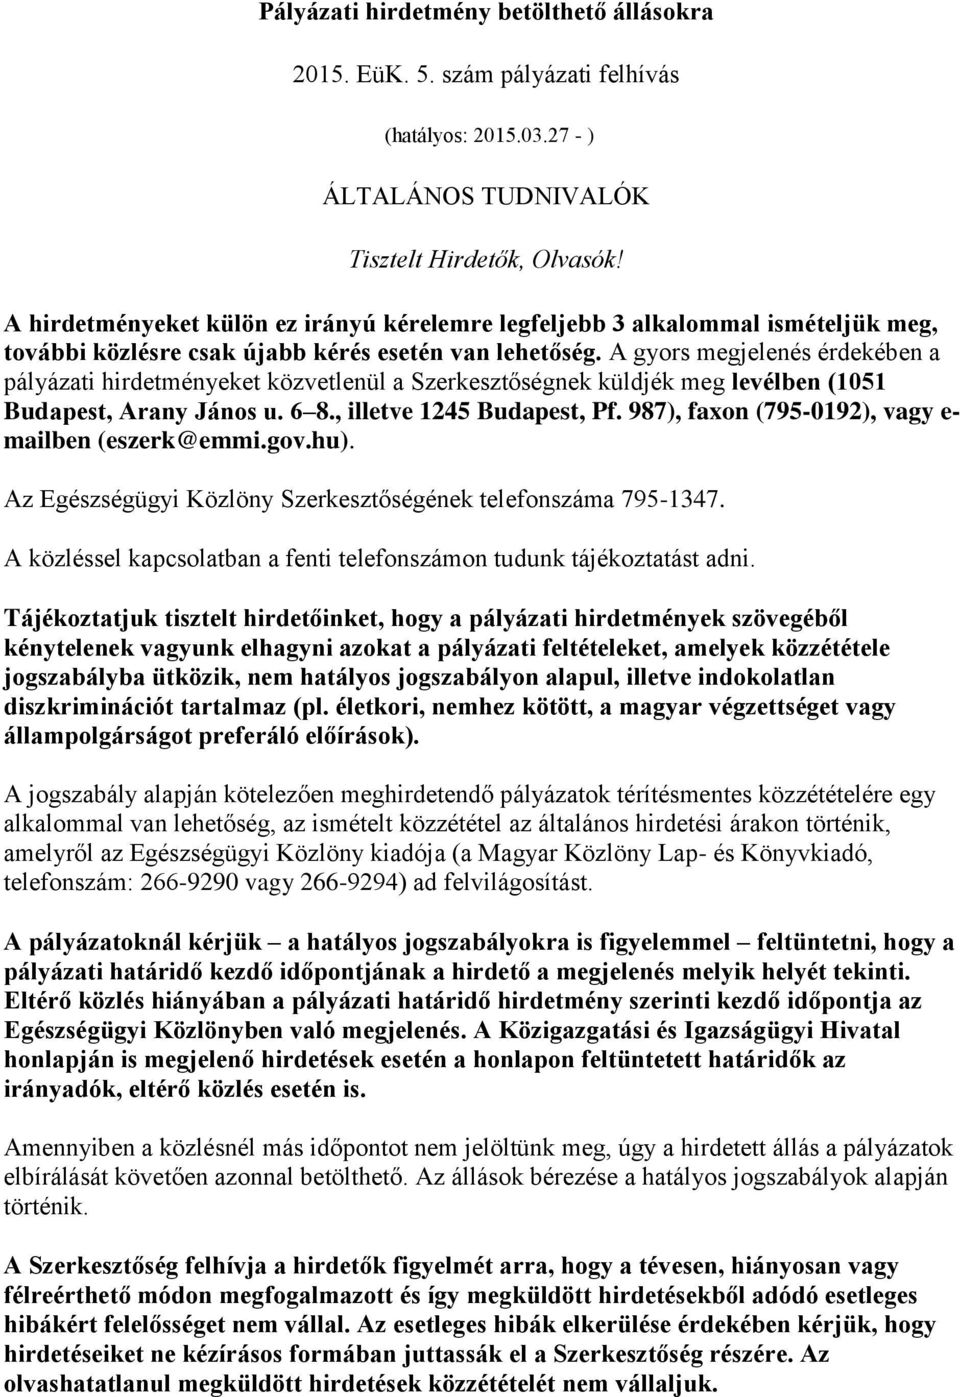 A gyors megjelenés érdekében a pályázati hirdetményeket közvetlenül a Szerkesztőségnek küldjék meg levélben (1051 Budapest, Arany János u. 6 8., illetve 1245 Budapest, Pf.